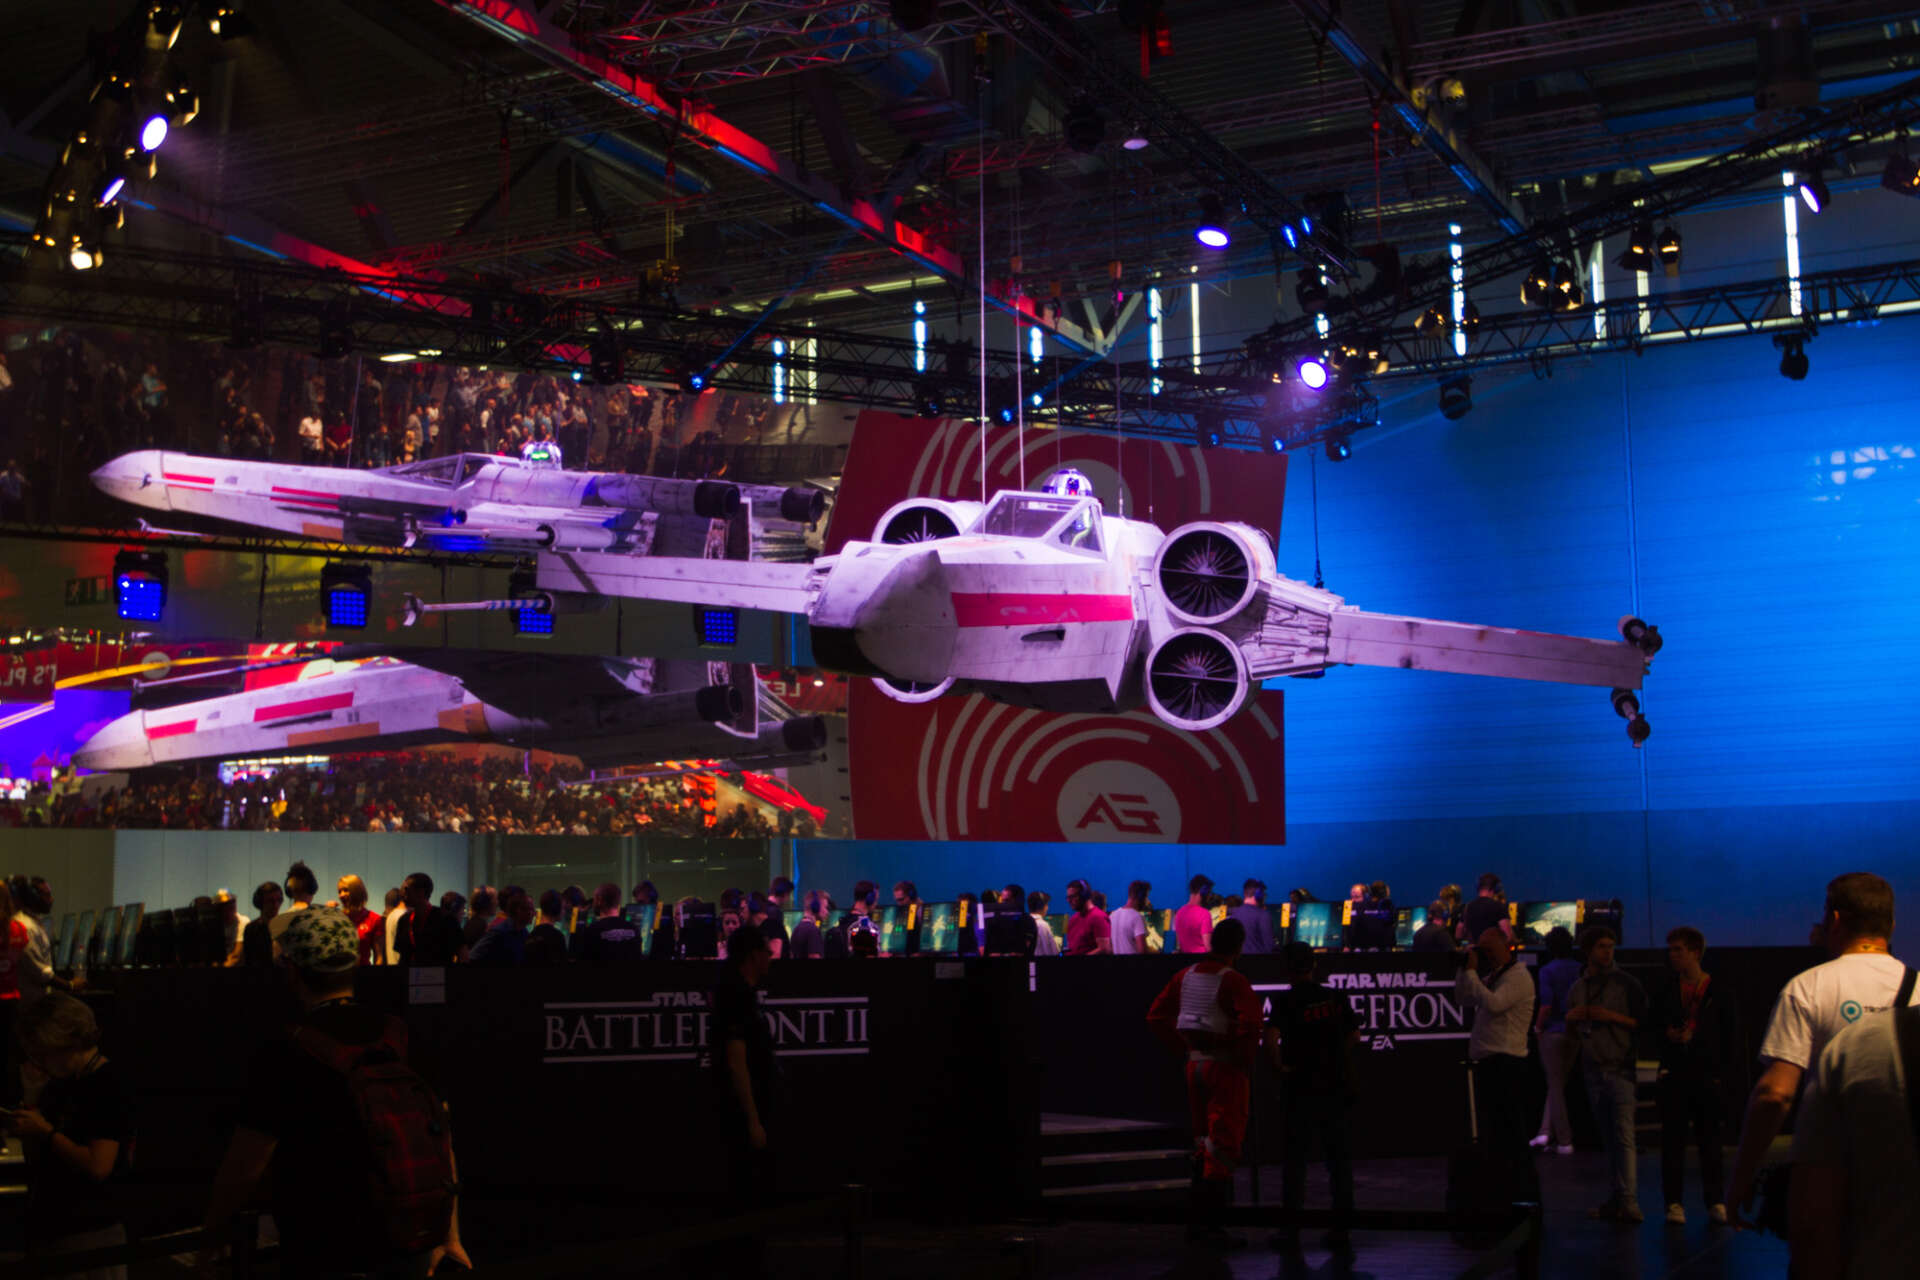 Ein Star Wars Raumschiff haengt an Seilen über den Anspielstationen und dem Publikum von Battlefront II